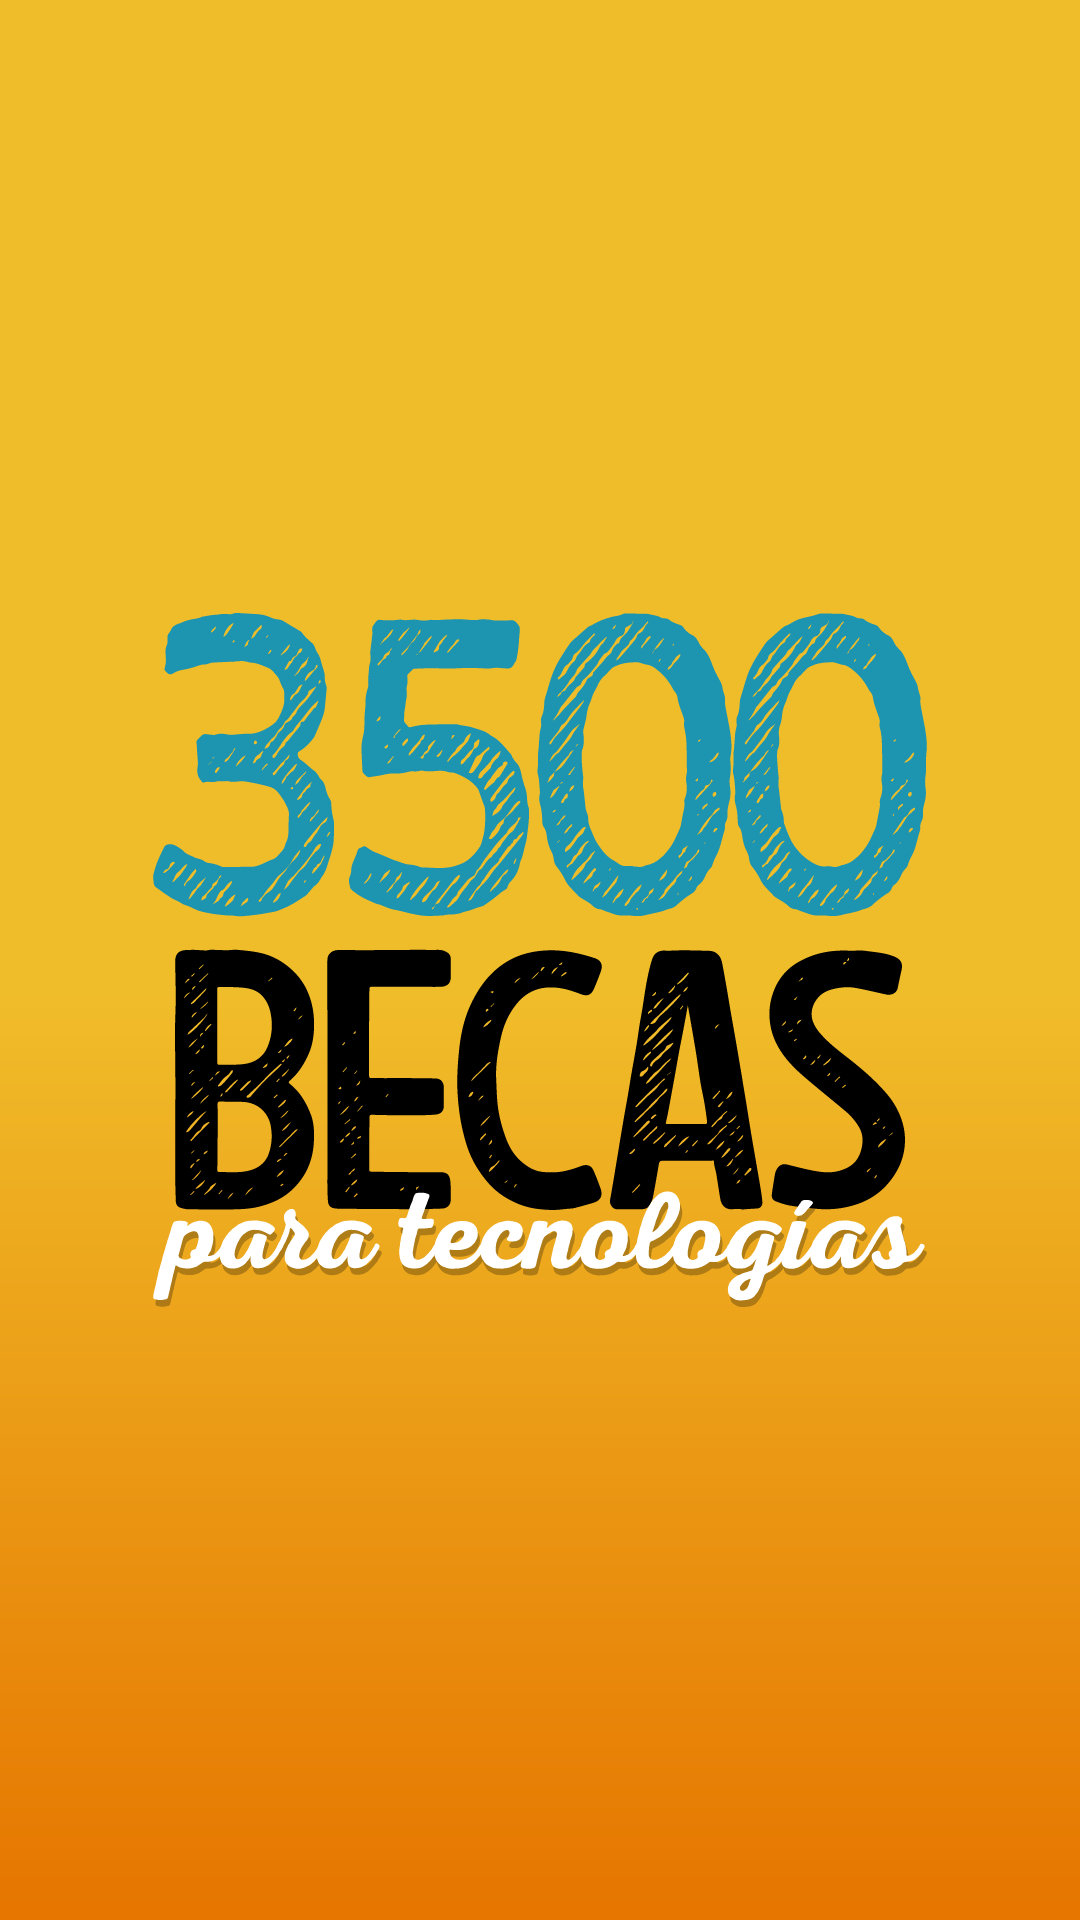 3500 becas para tecnologías